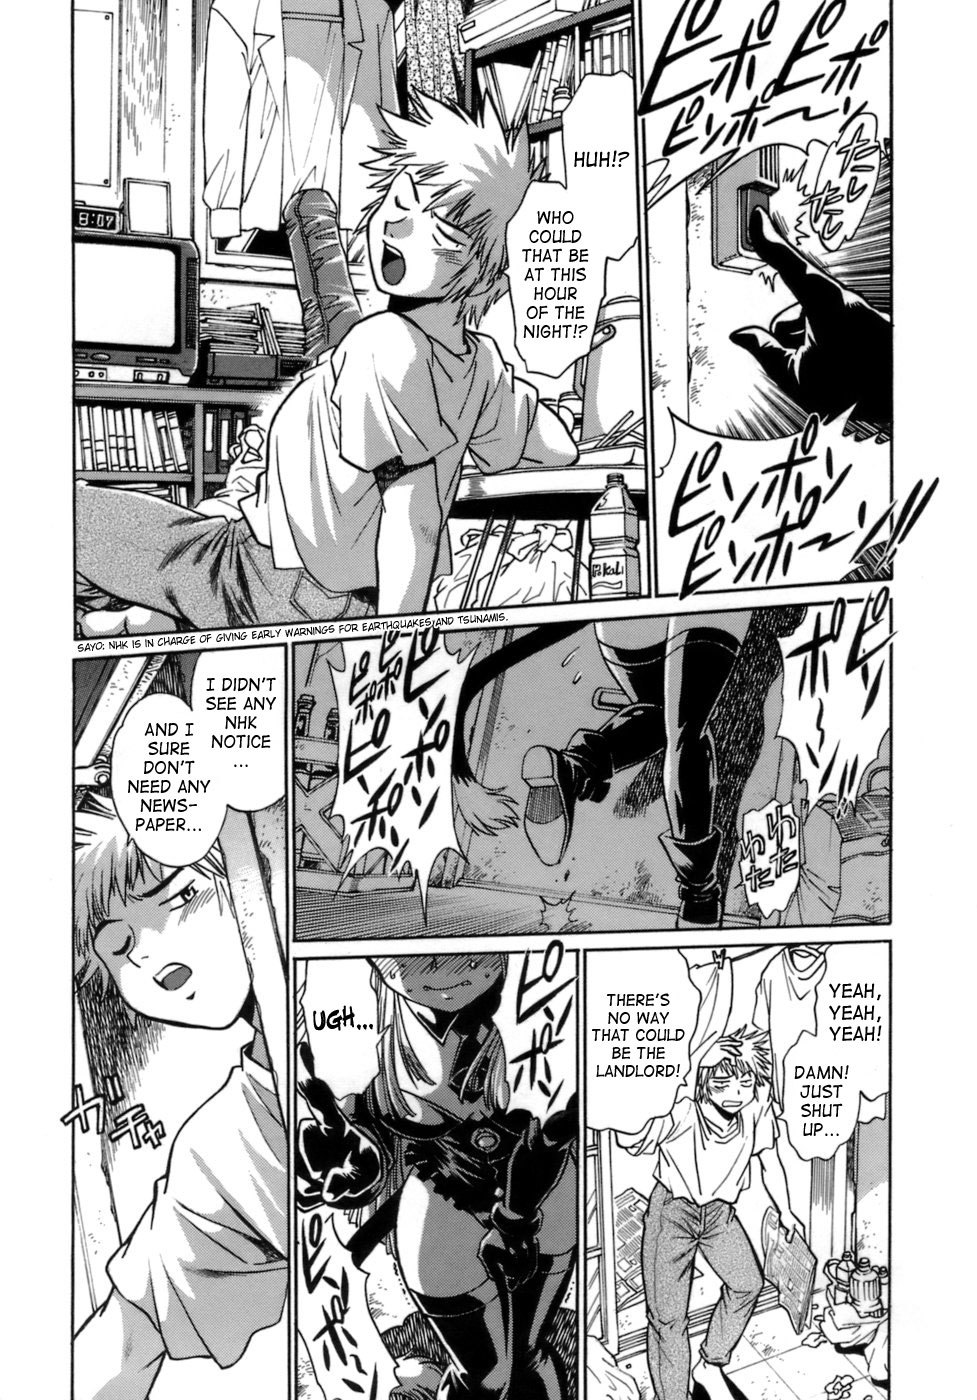 Tail Chaser Vol.1 6 hentai manga